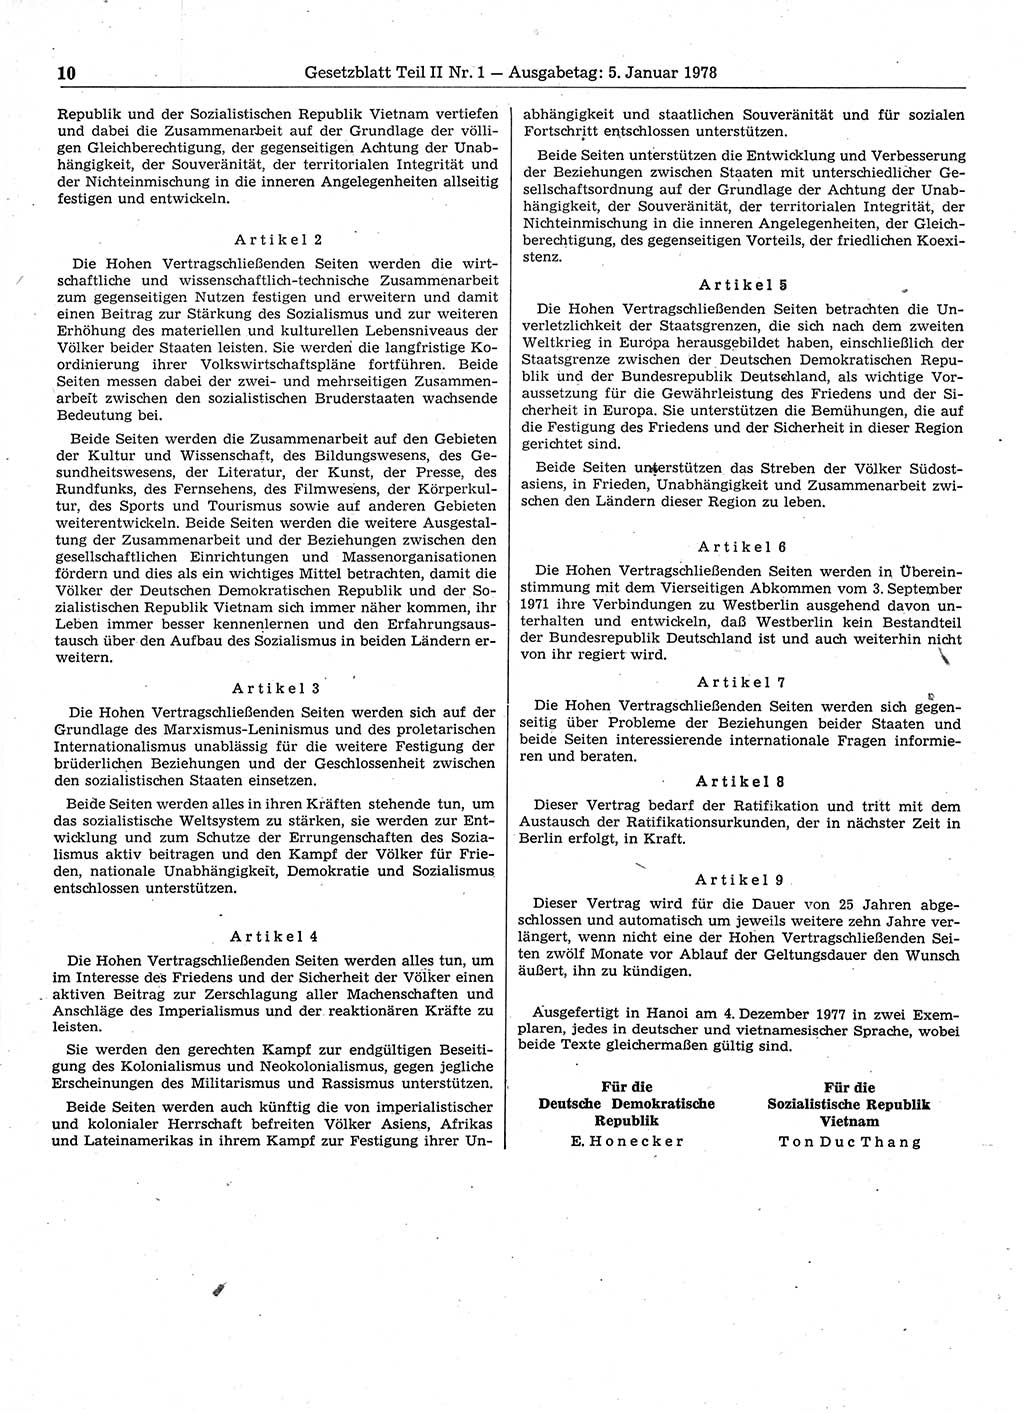 Gesetzblatt (GBl.) der Deutschen Demokratischen Republik (DDR) Teil ⅠⅠ 1978, Seite 10 (GBl. DDR ⅠⅠ 1978, S. 10)